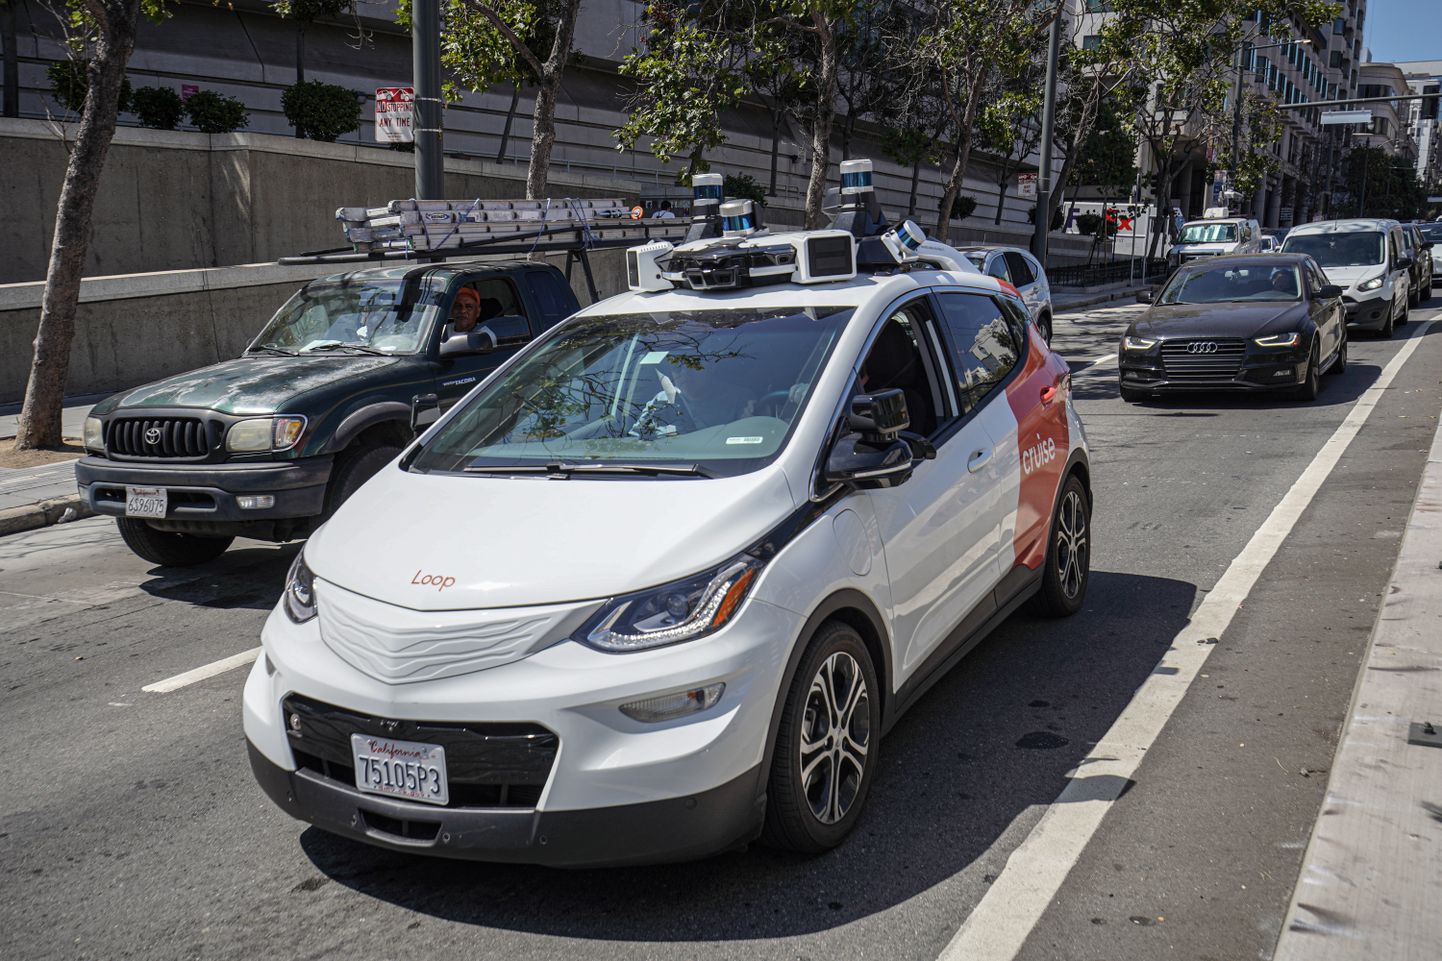 Isesõitev takso vuramas San Francisco tänaval 2023. aasta augustis. Robottakso teenust pakuvad linnas kaks ettevõtet Waymo ja Cruise, kes on ajanud oma töökohtade pärast muretsevad taksojuhid taustal mässama.